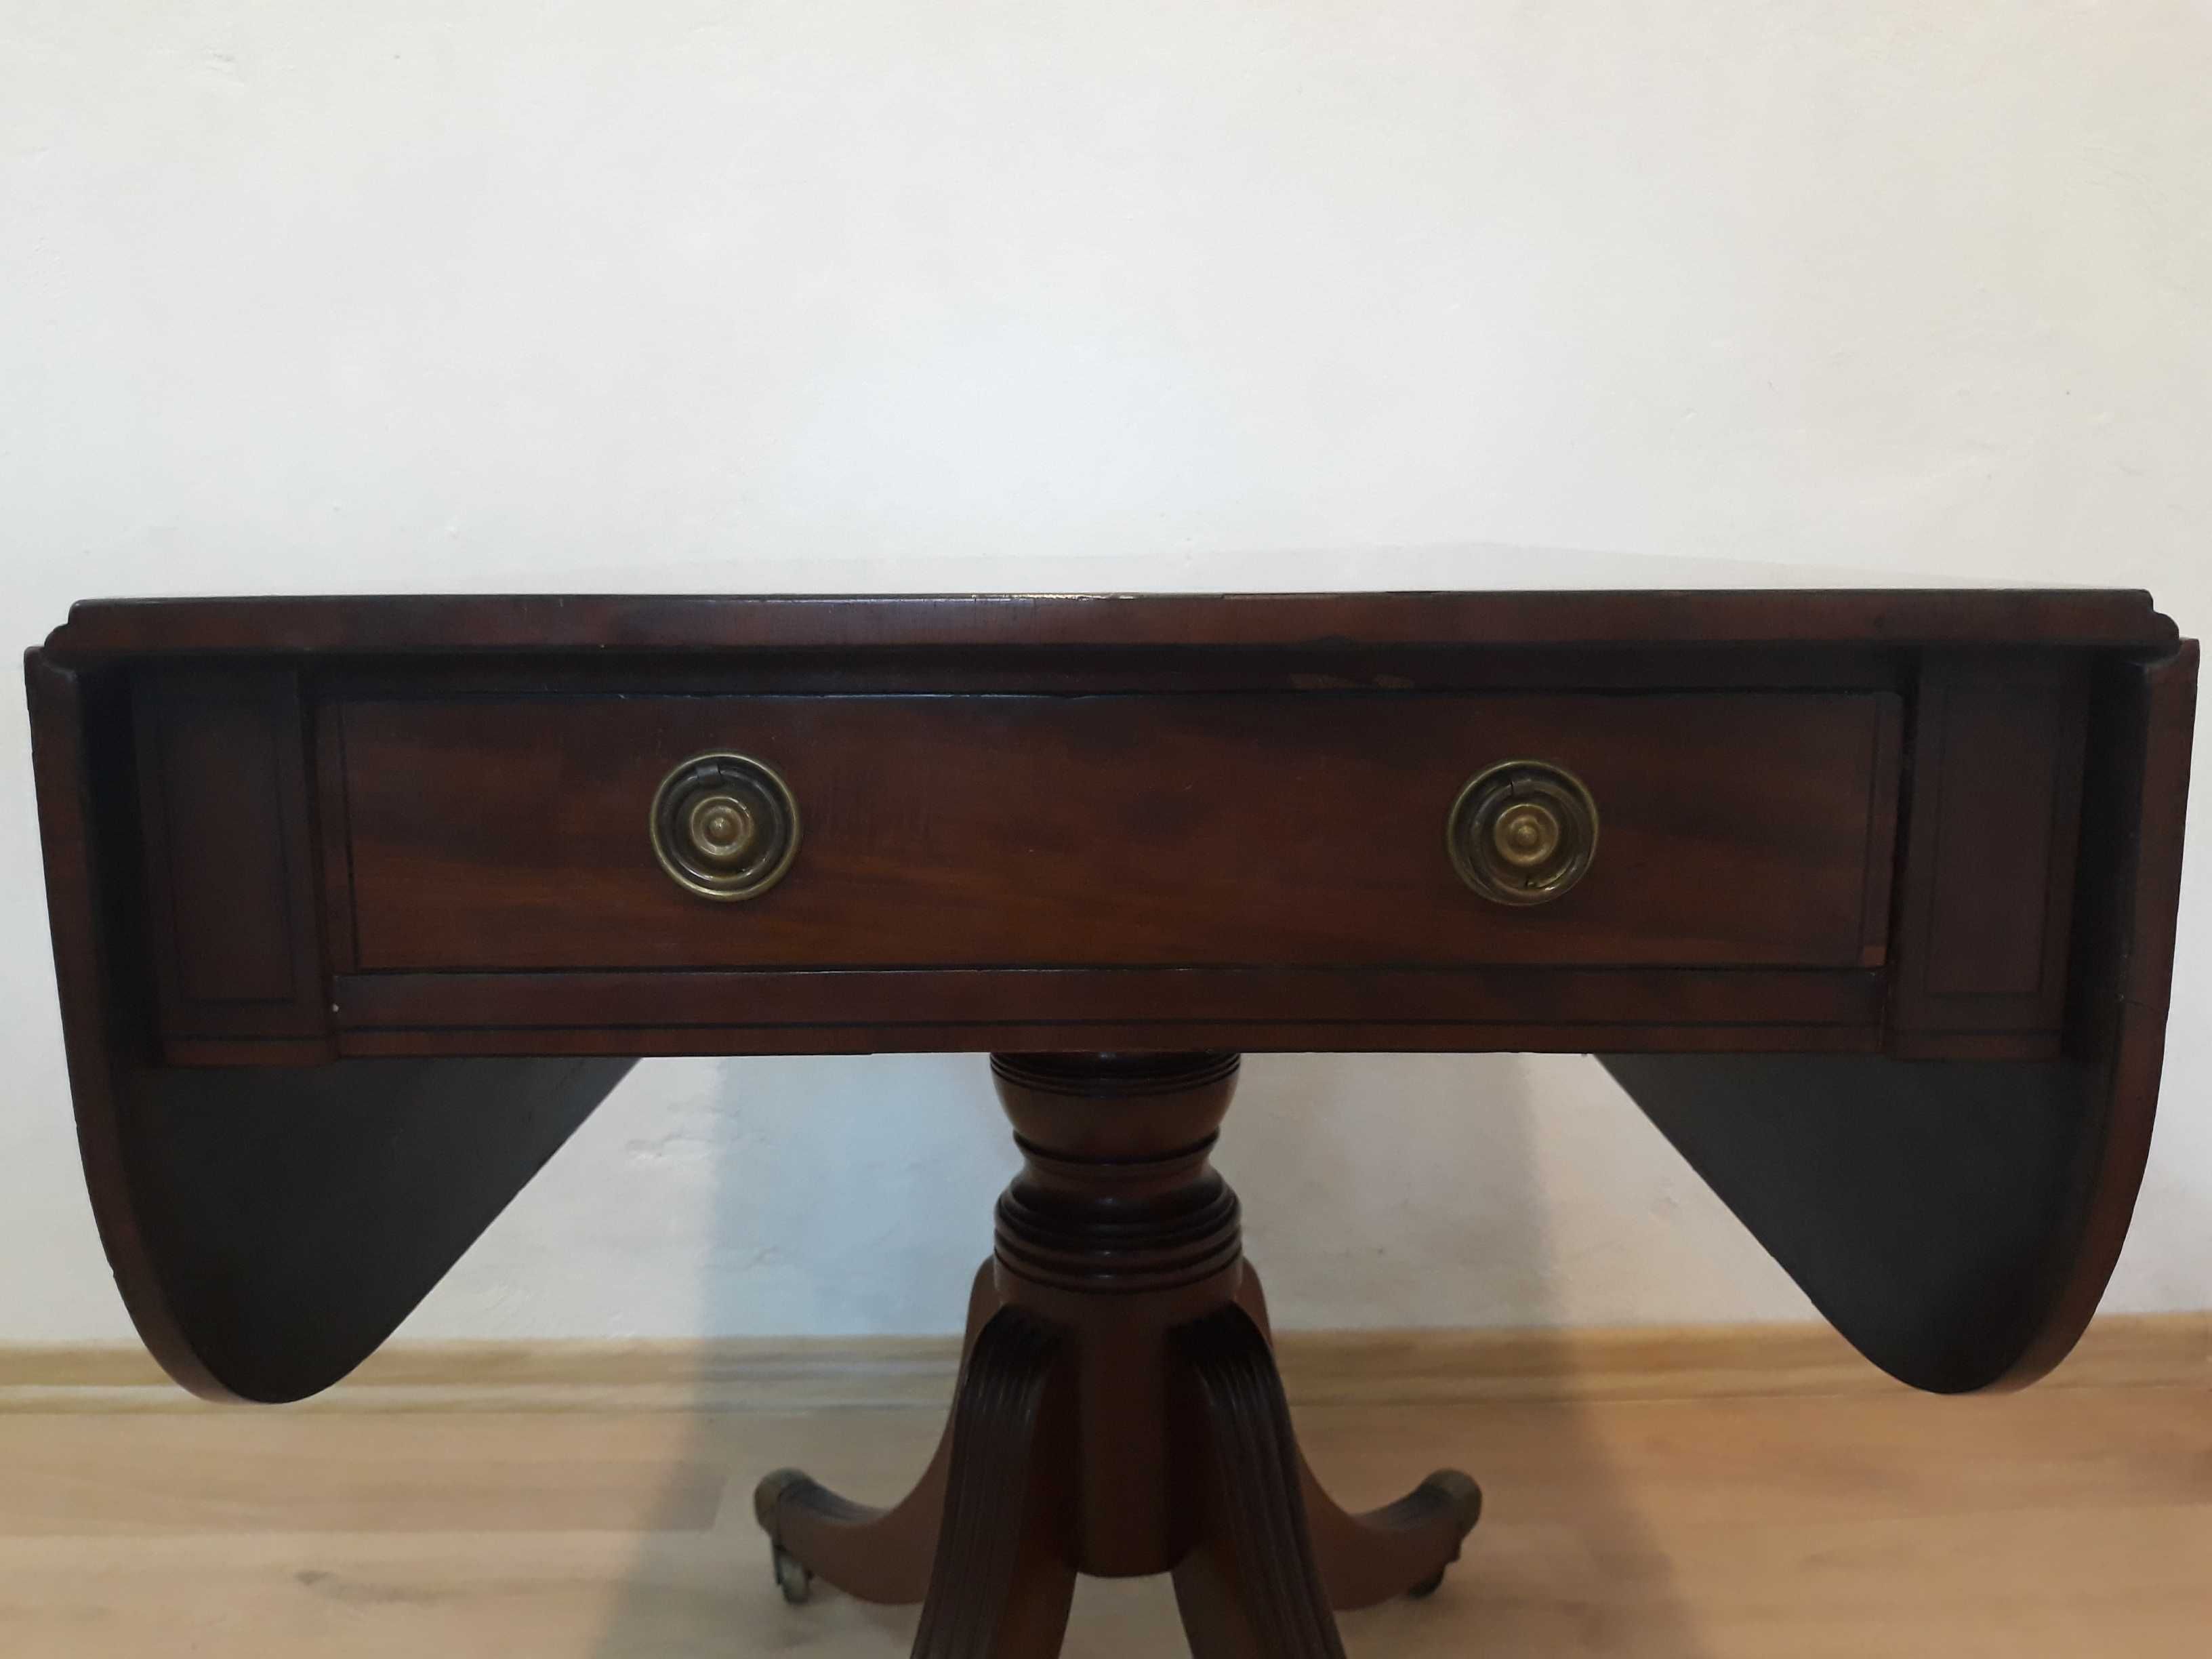 Zabytkowy stolik sofa table z rozkładanym blatem mosiężne nogi kółka